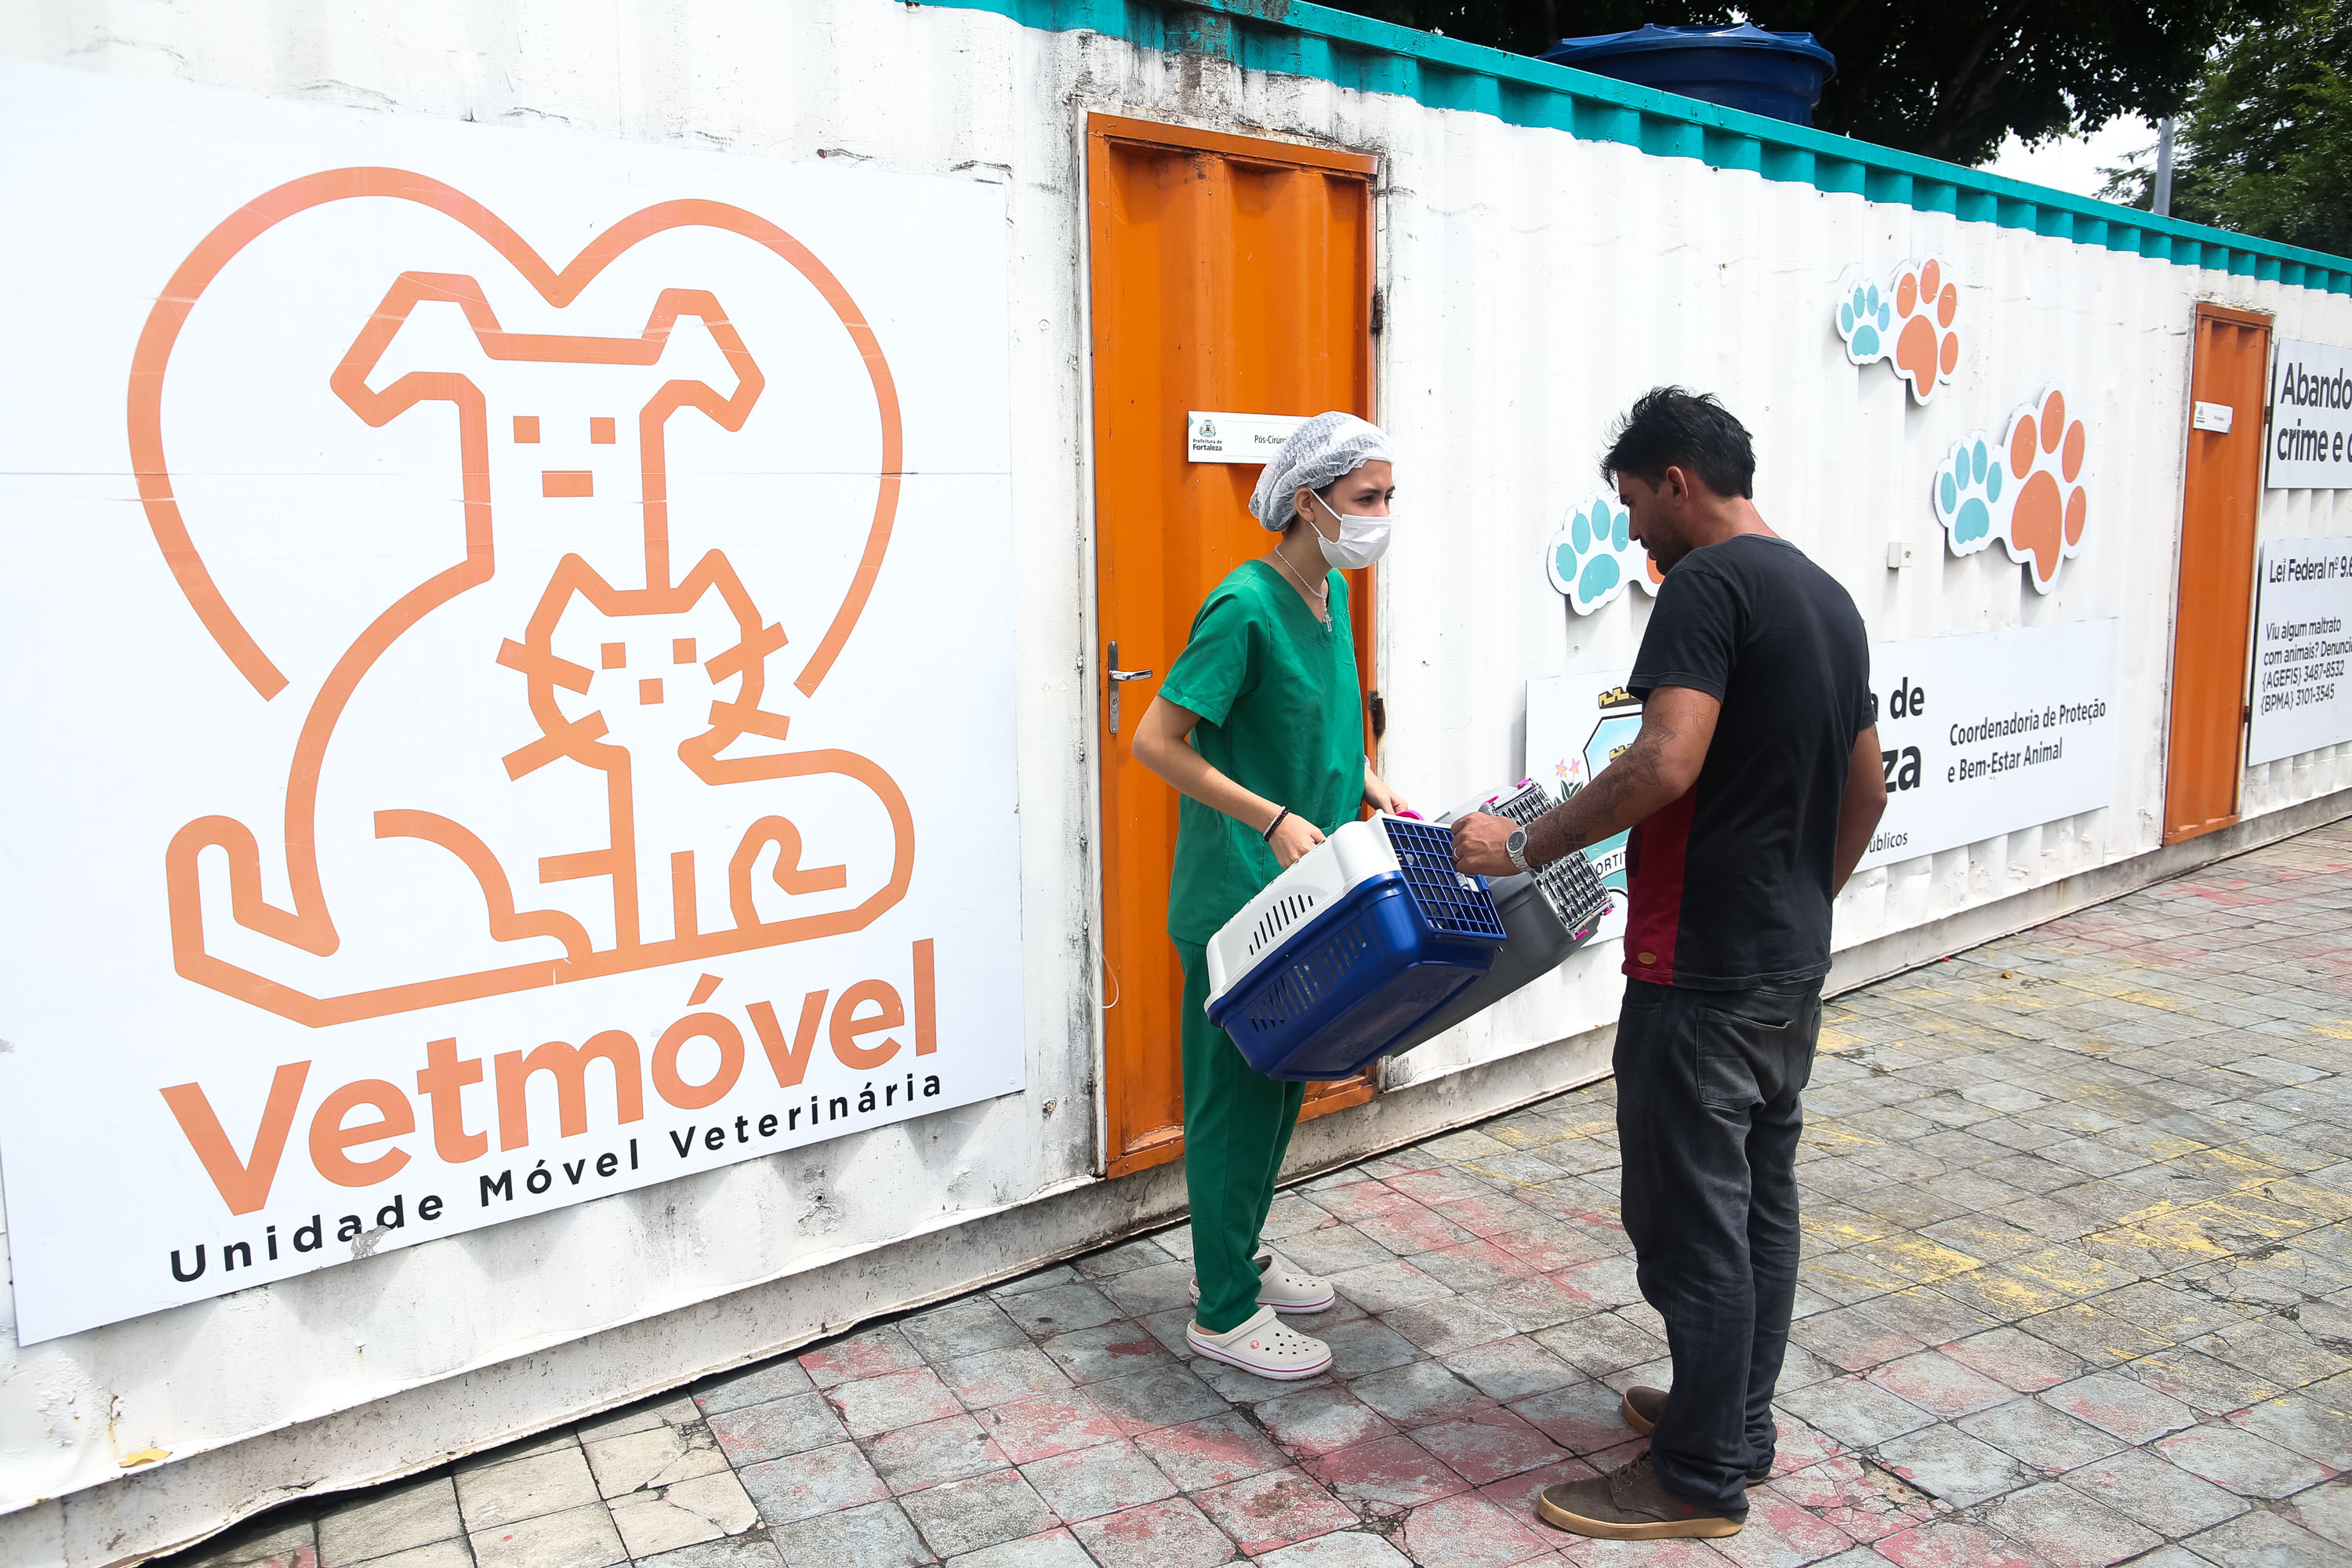 Veterinária recebe caixa de transporte de pet na frente de container do VetMóvel.